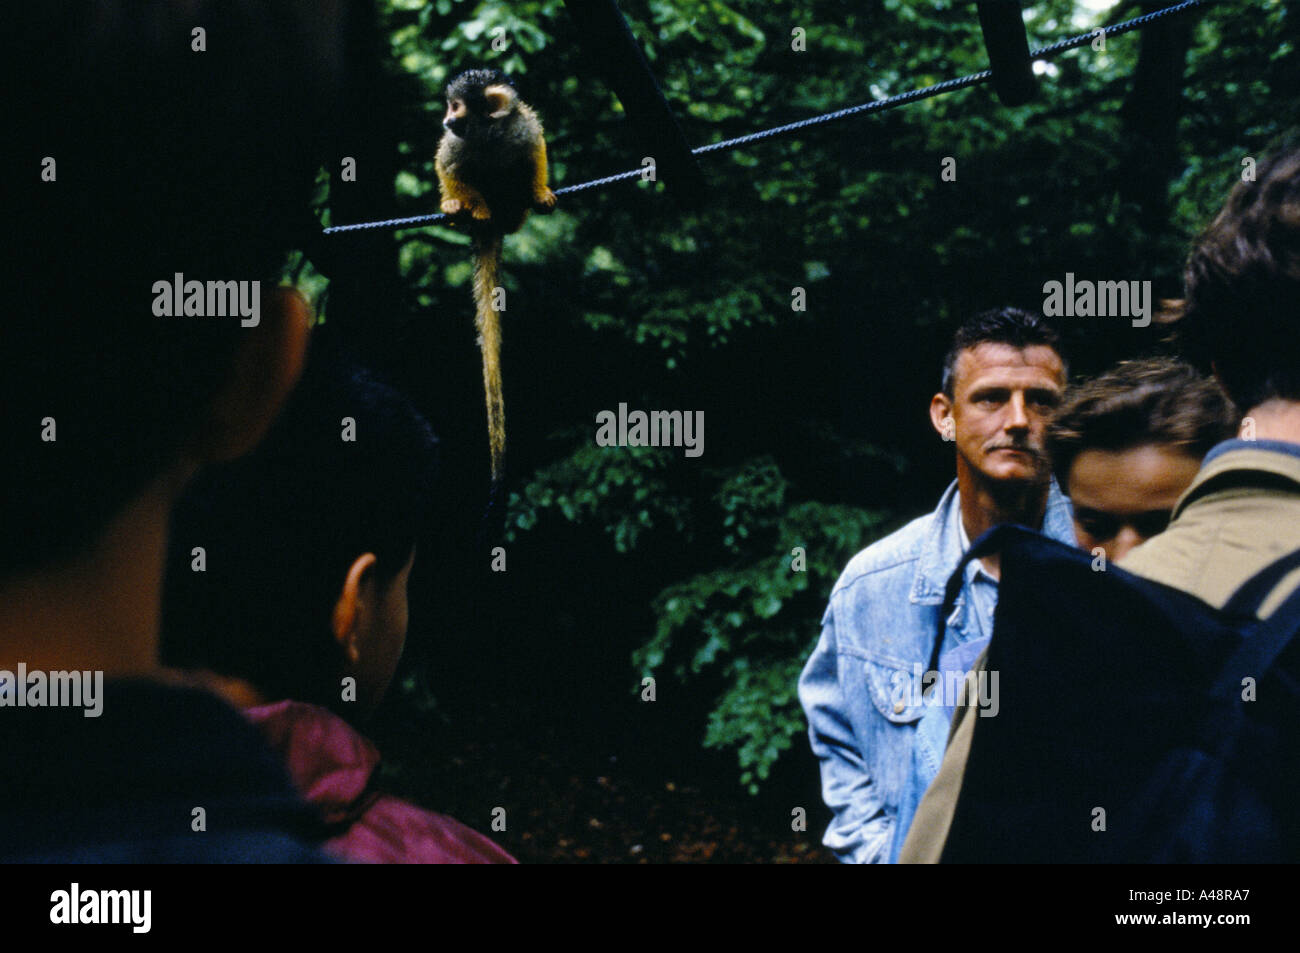 Apenheul primate park holland dove 35 specie di scimmie scimmie e proscimmie roaming libero Foto Stock